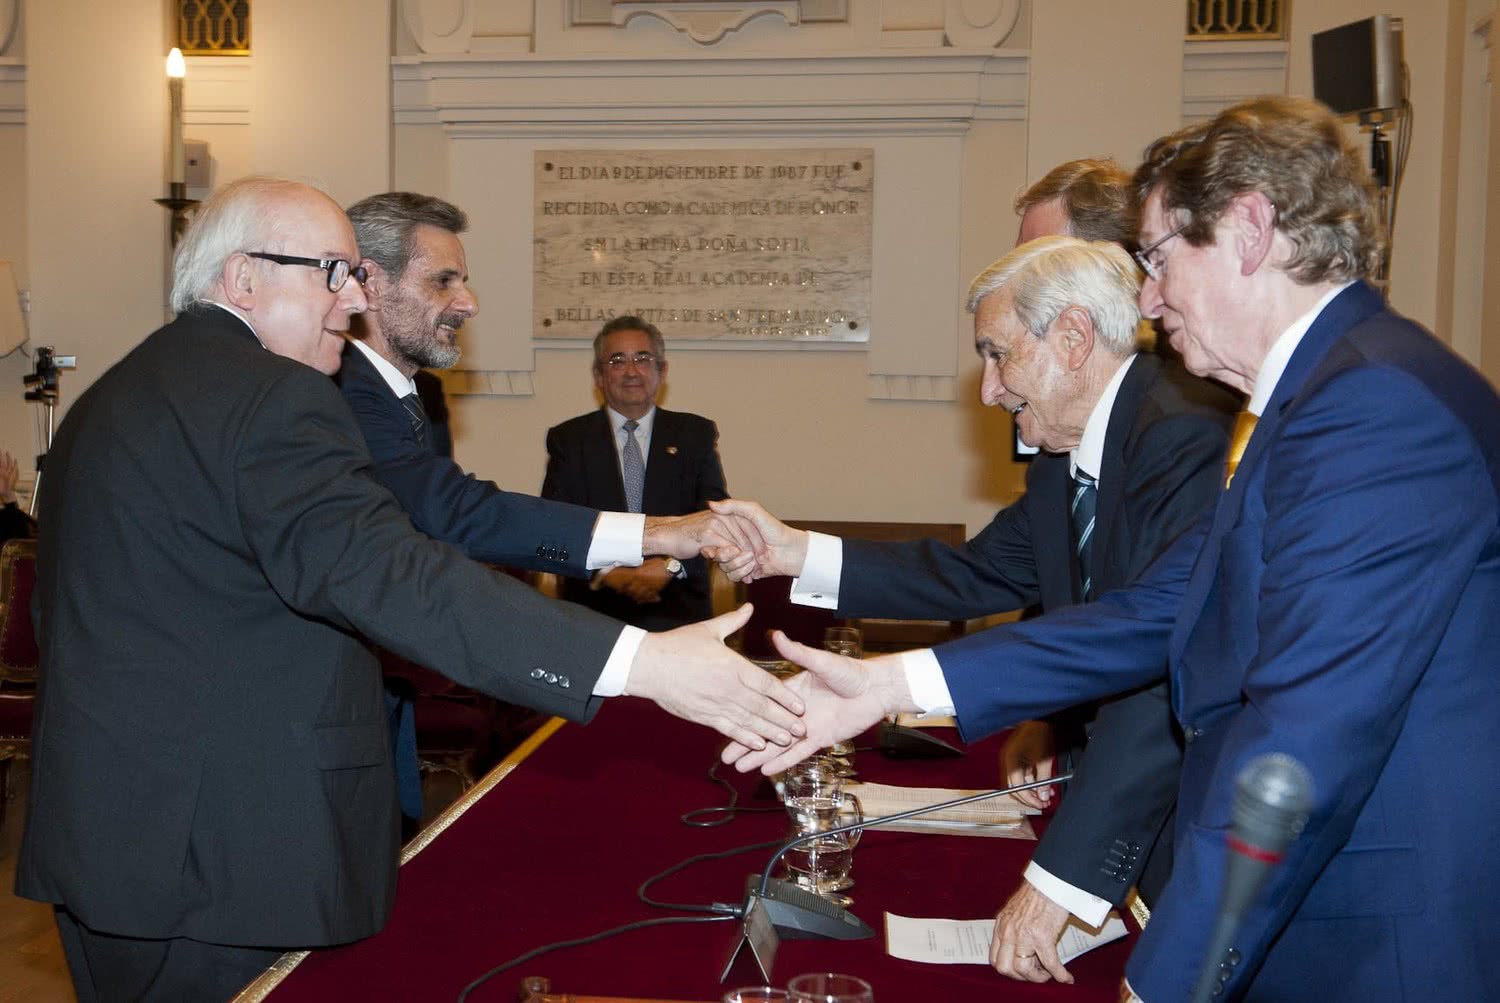 Javier Cenicacelaya e Íñigo Saloña reciben el Premio 'Rafael Manzano Martos'.